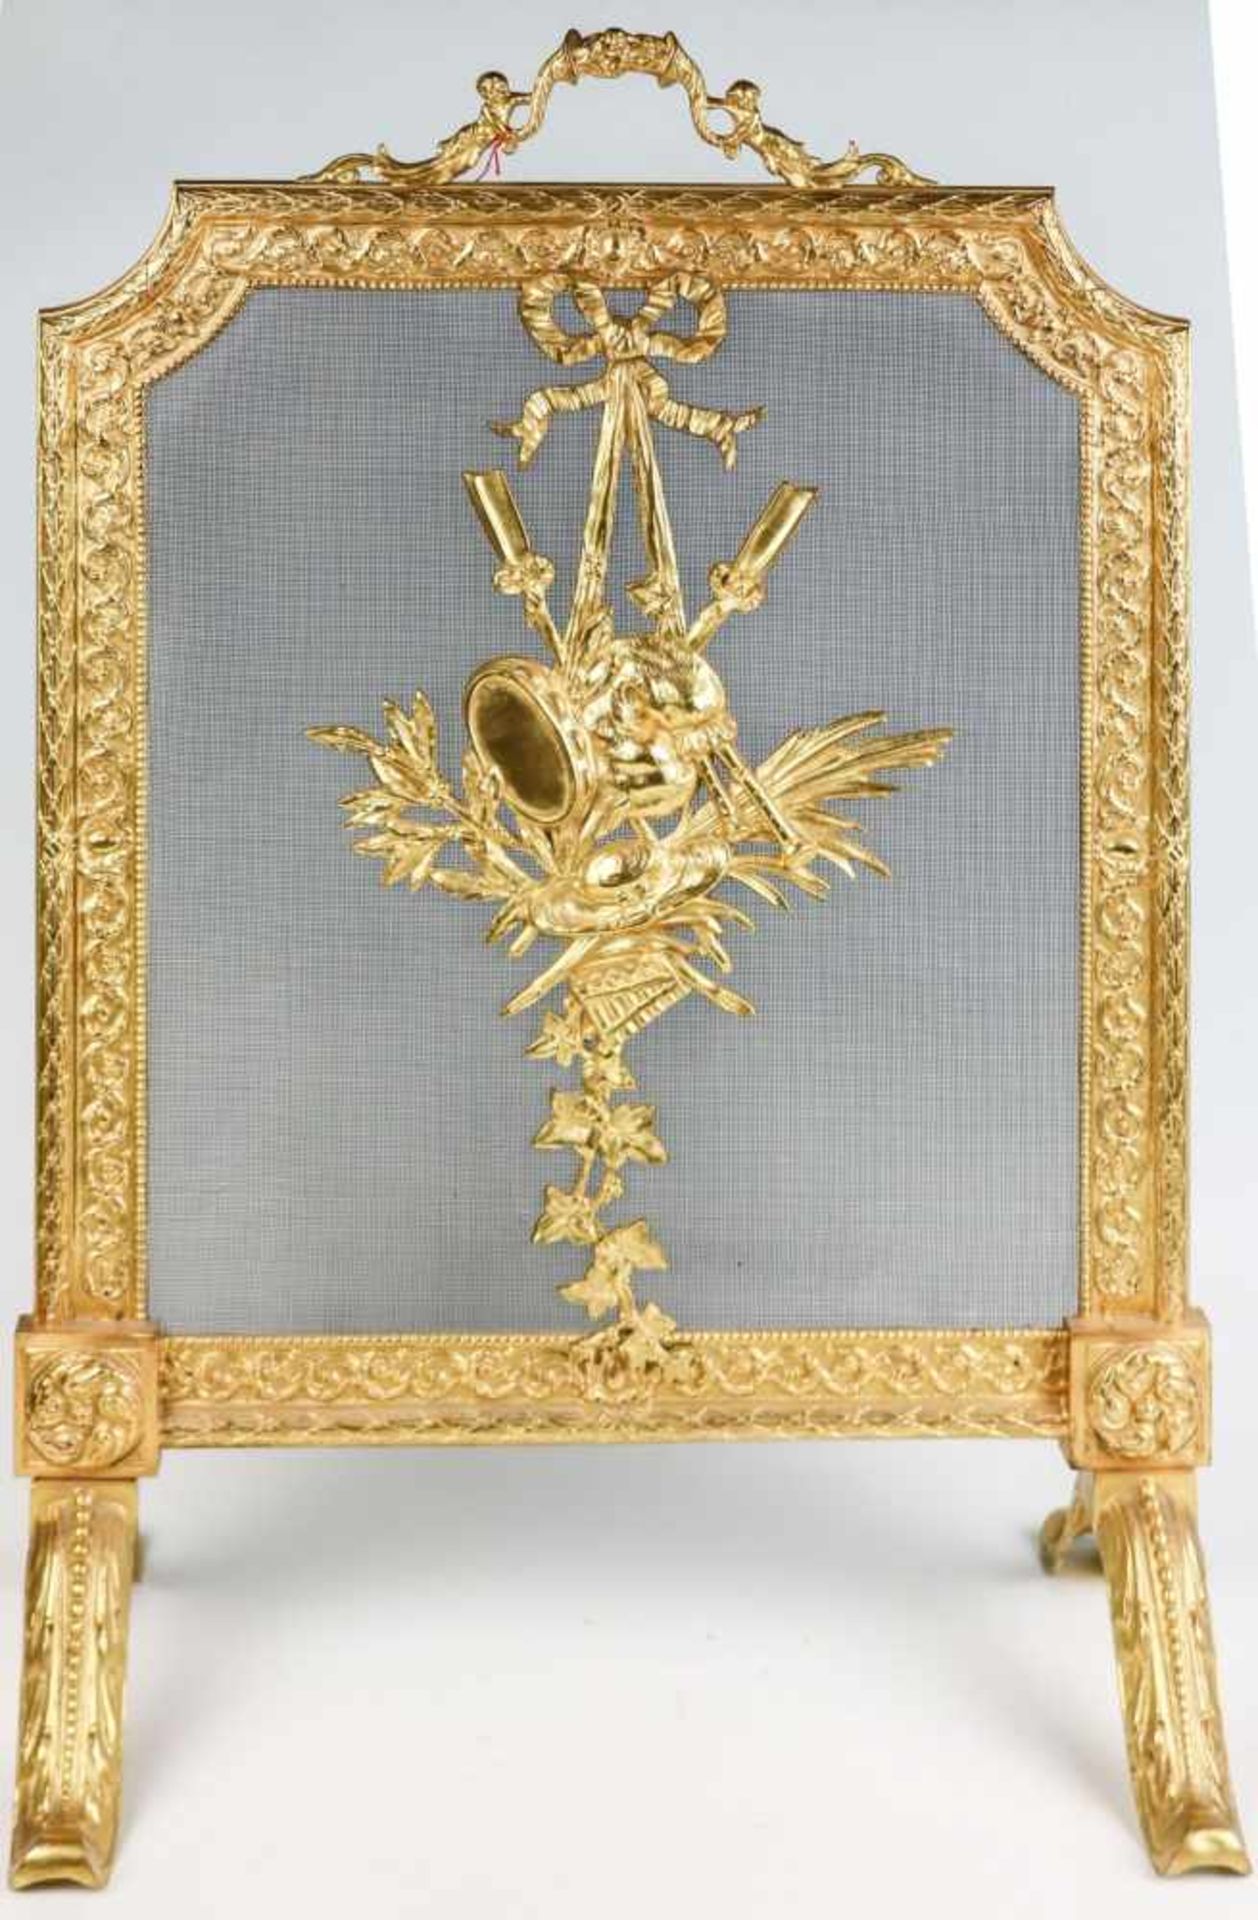 Kaminschirm im Louis-XVI-StilMessing, vergoldet. Reliefiertes Rahmengestell mit eingezogenen Ecken